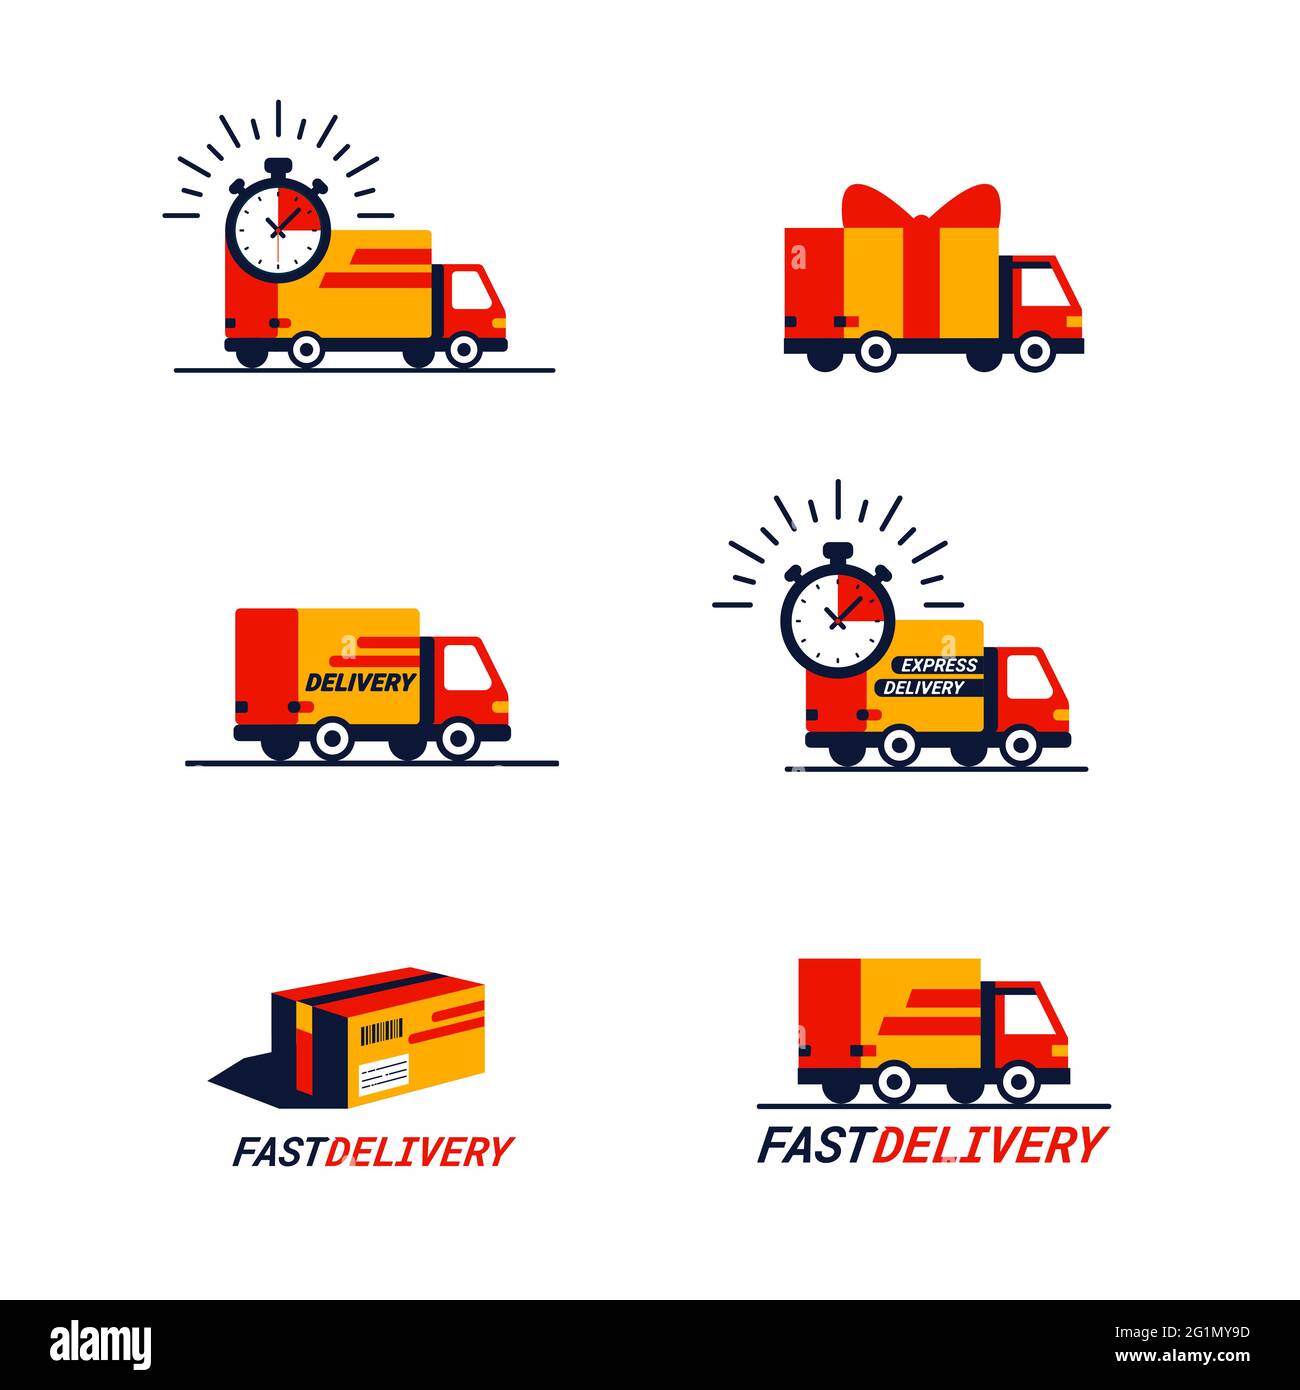 Jeu de couleurs des icônes liées à la livraison. Camions et camionnettes de livraison en rouge et jaune. Icônes simples de style plat isolées sur fond blanc Illustration de Vecteur